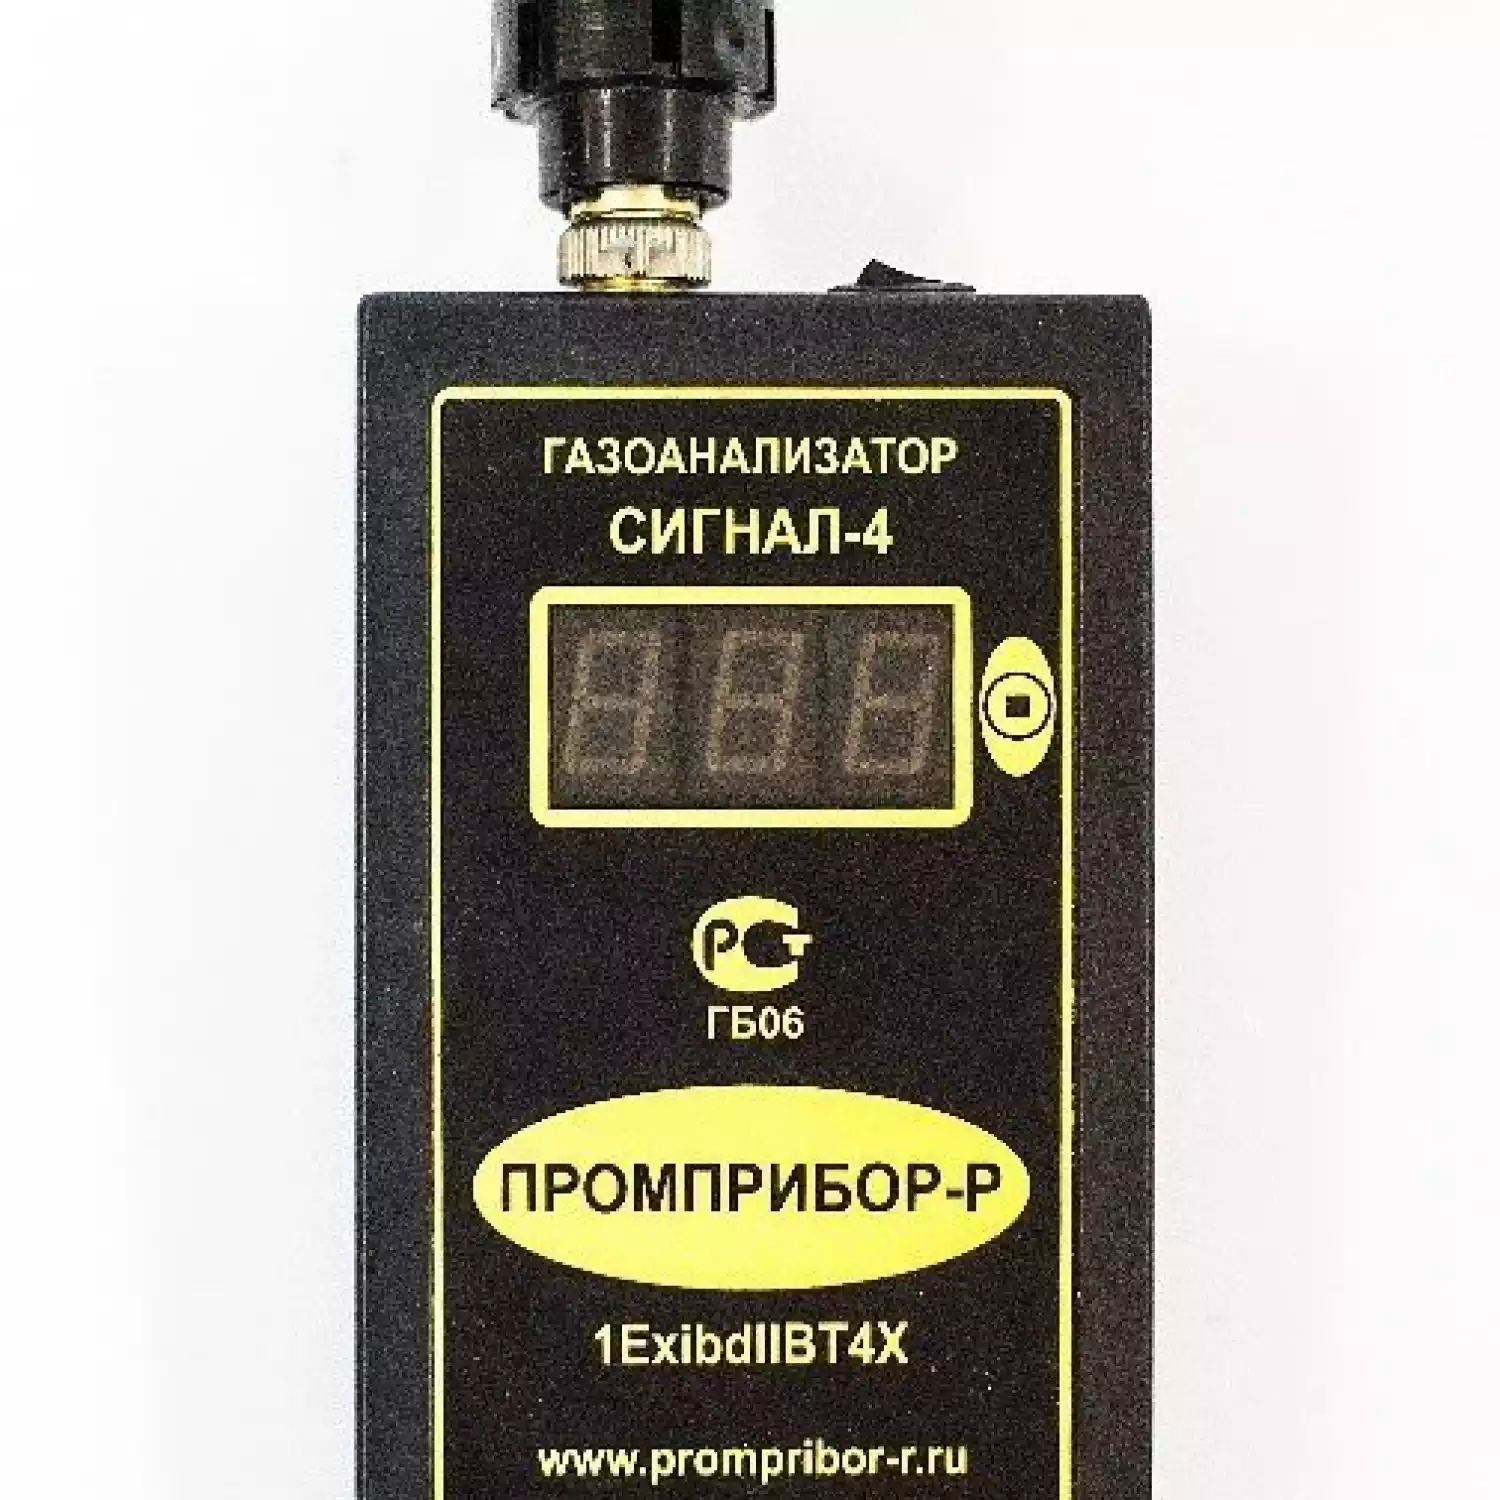 Персональный переносной газоанализатор метана (СН4) Сигнал-4 (Оптический сенсор) - 1